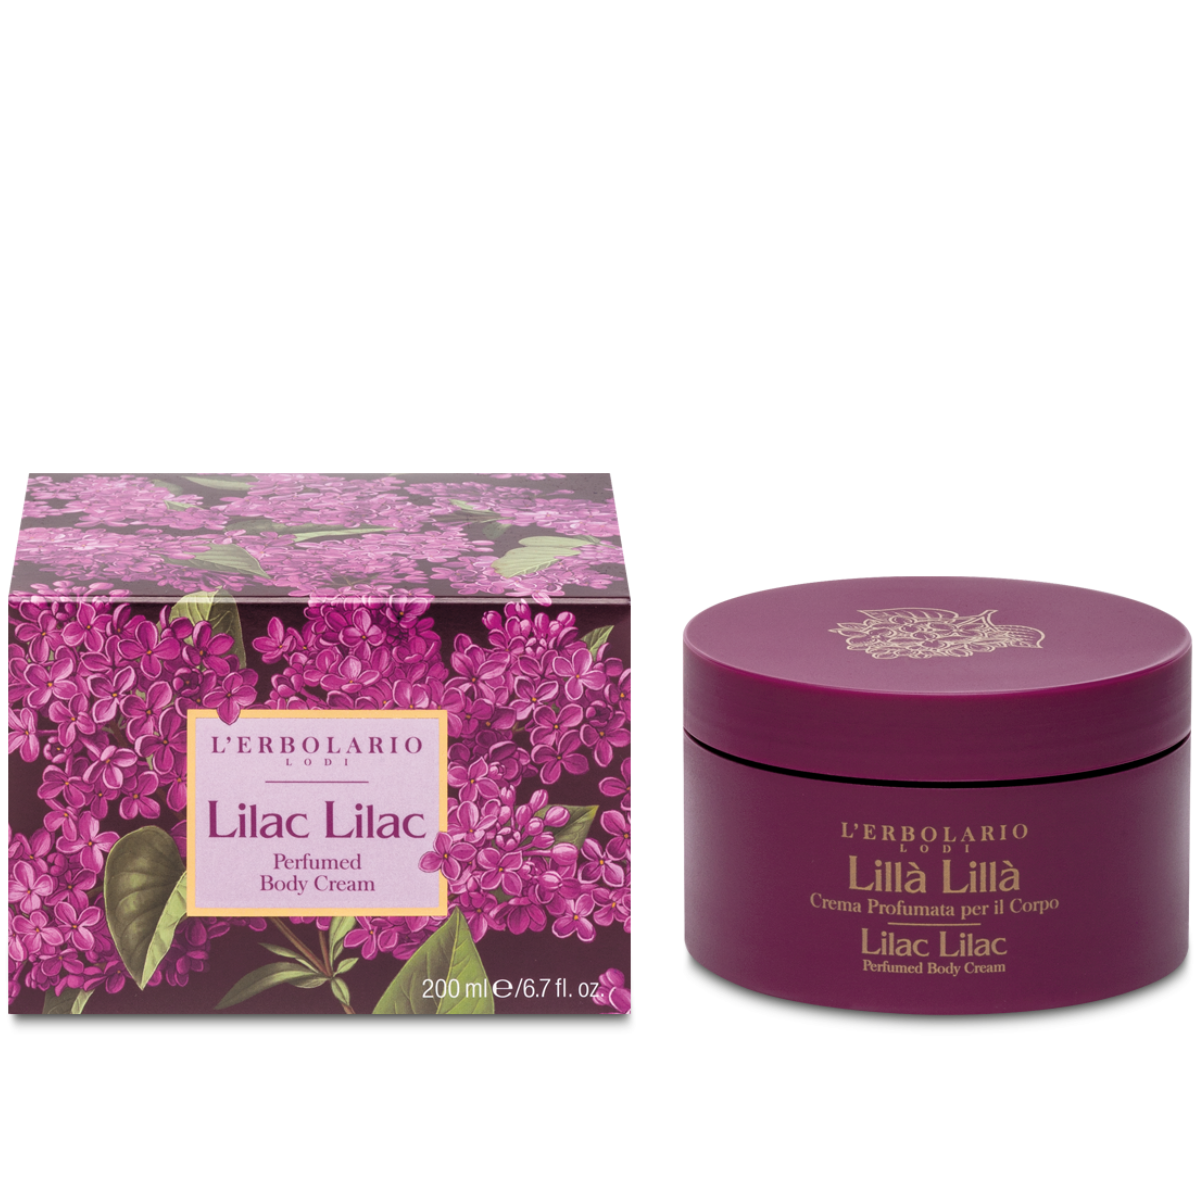 Lilac Lilac Perfumed Body Cream 200ml -  organic-lab-my.myshopify.com